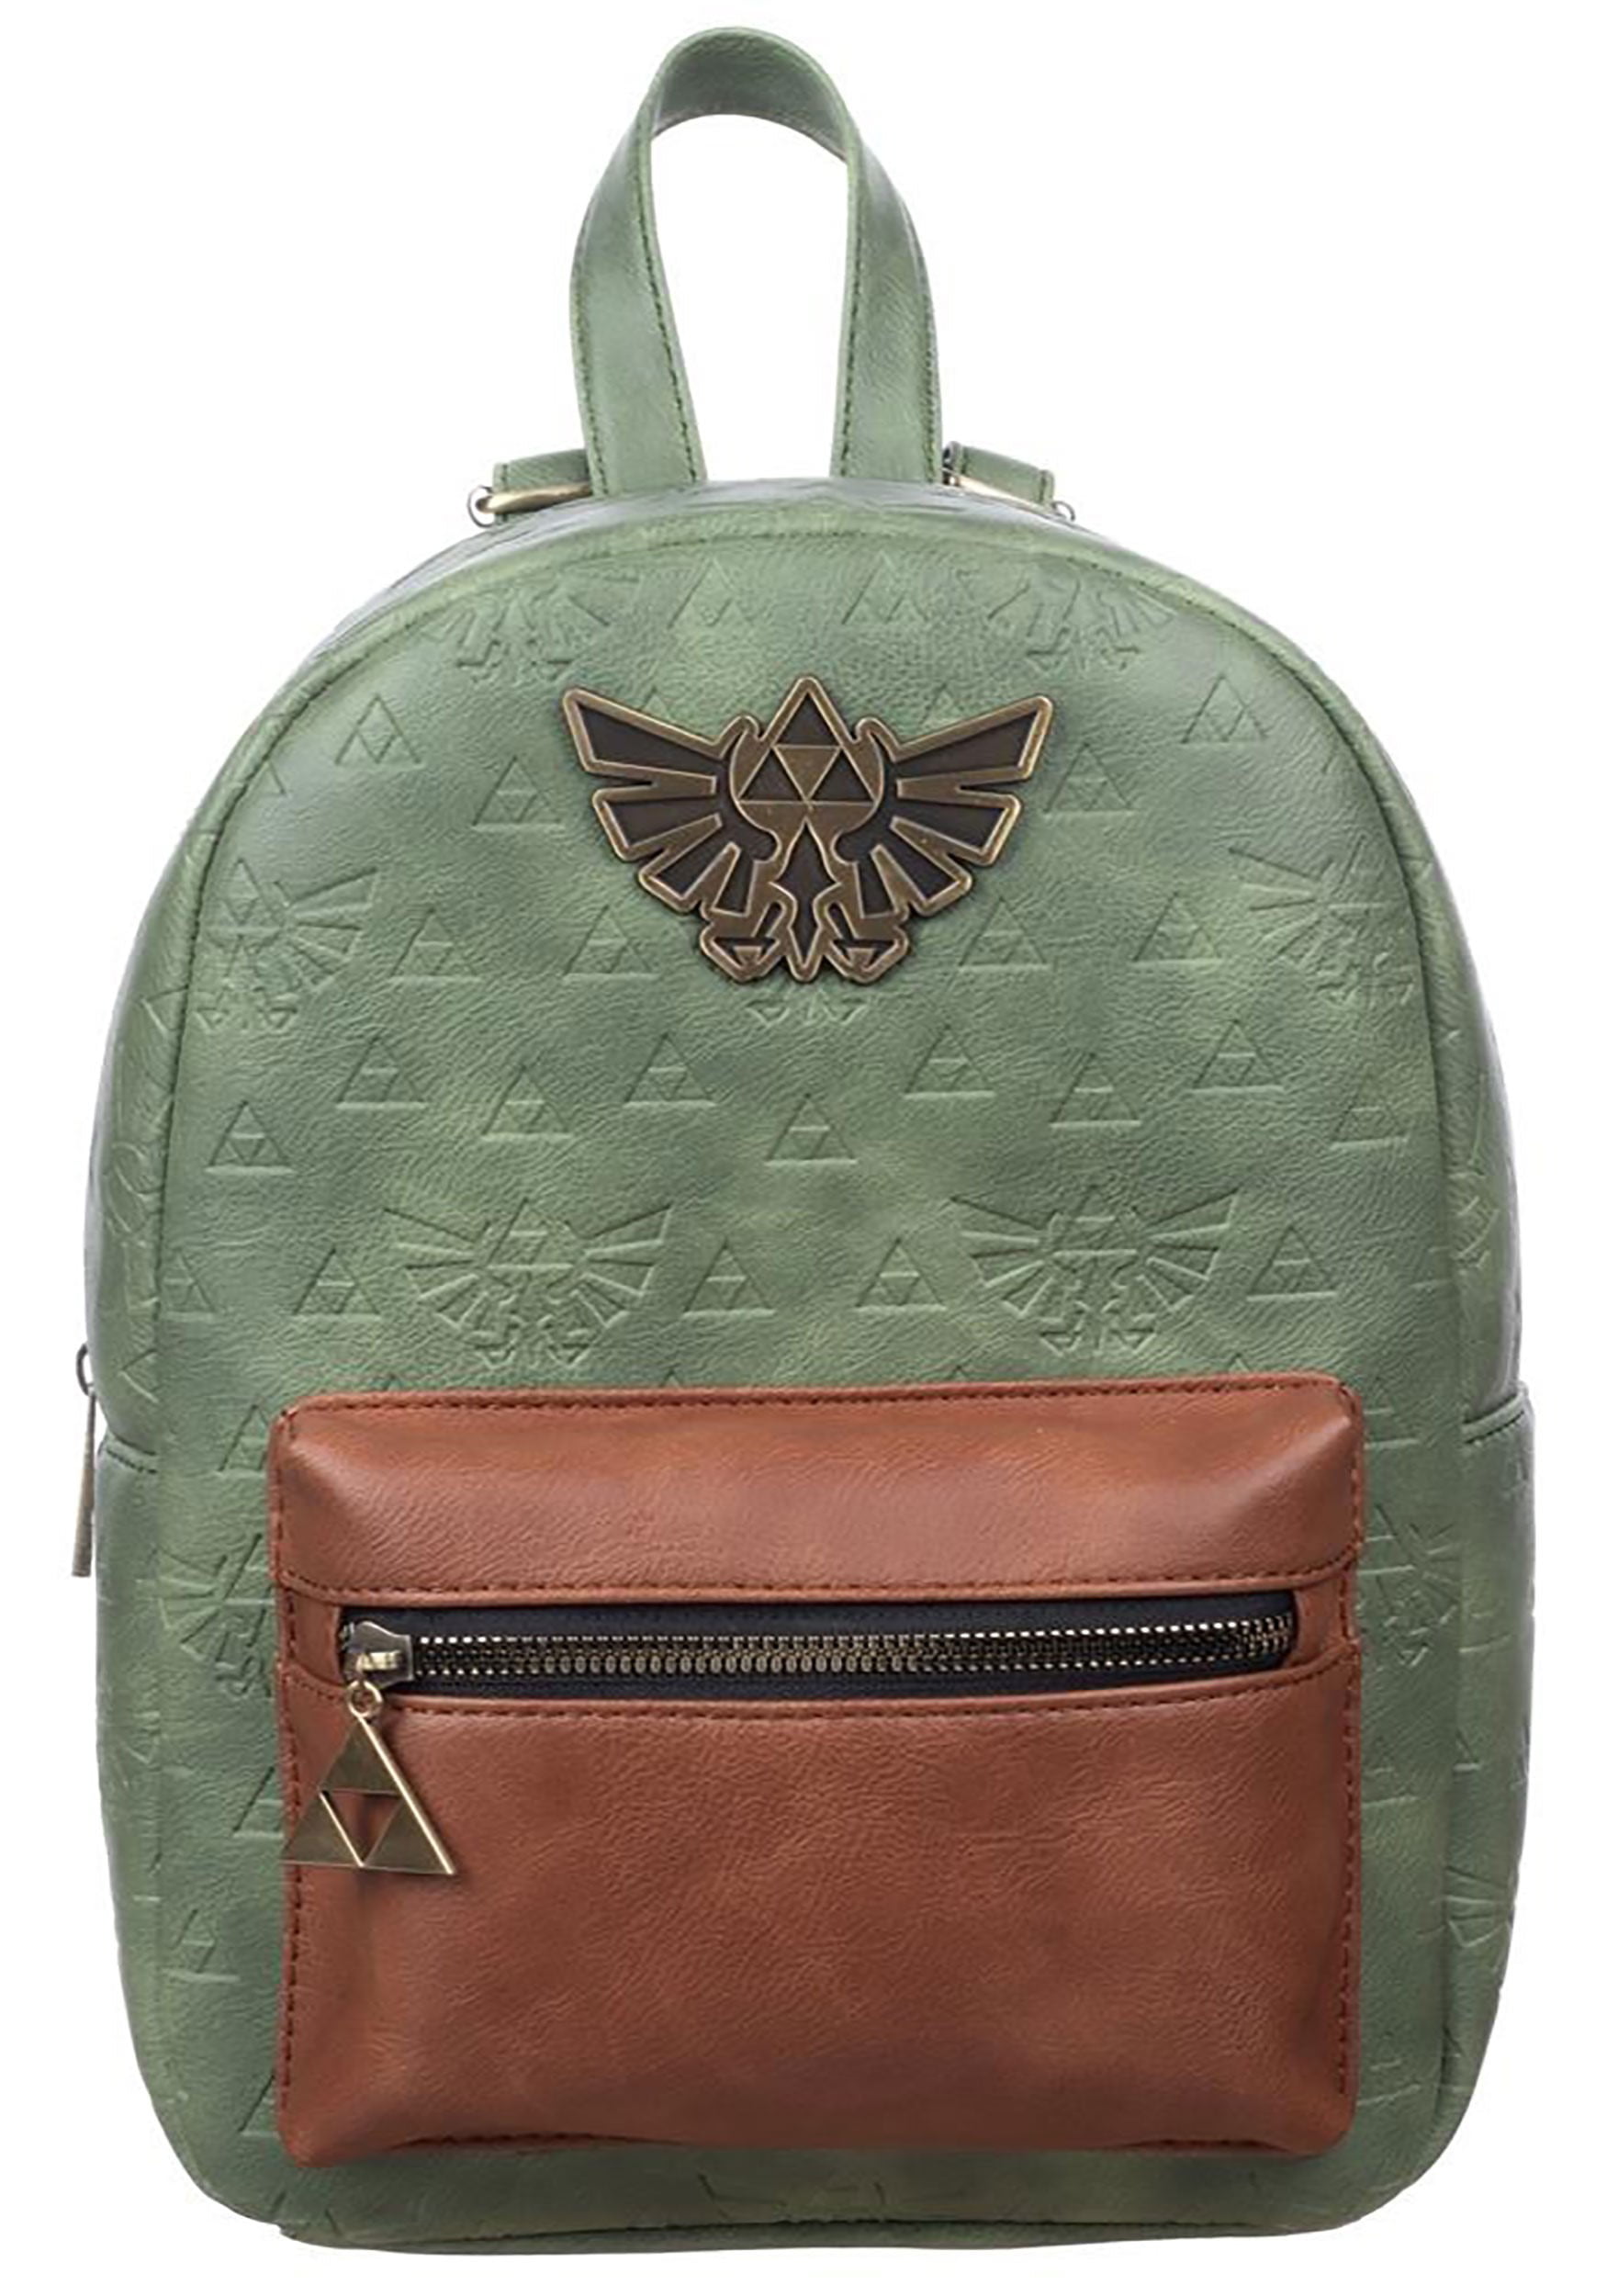 Breath of the Wild Backpack Laptop bag Shoulder packsac  /m The Legend of Zelda 